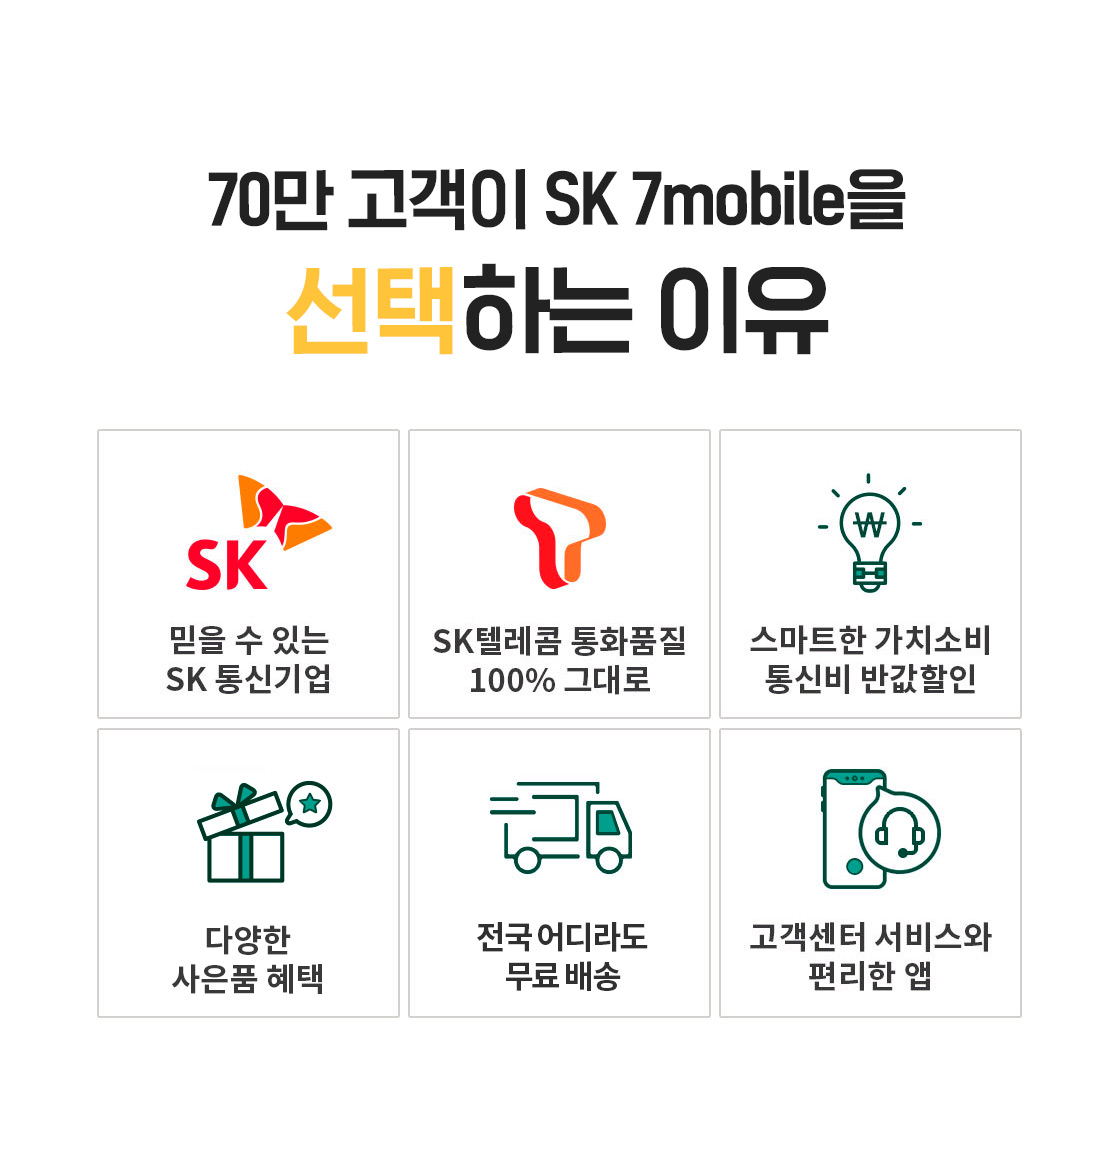 70만 고객이 SK7 mobile을 선택하는 이유